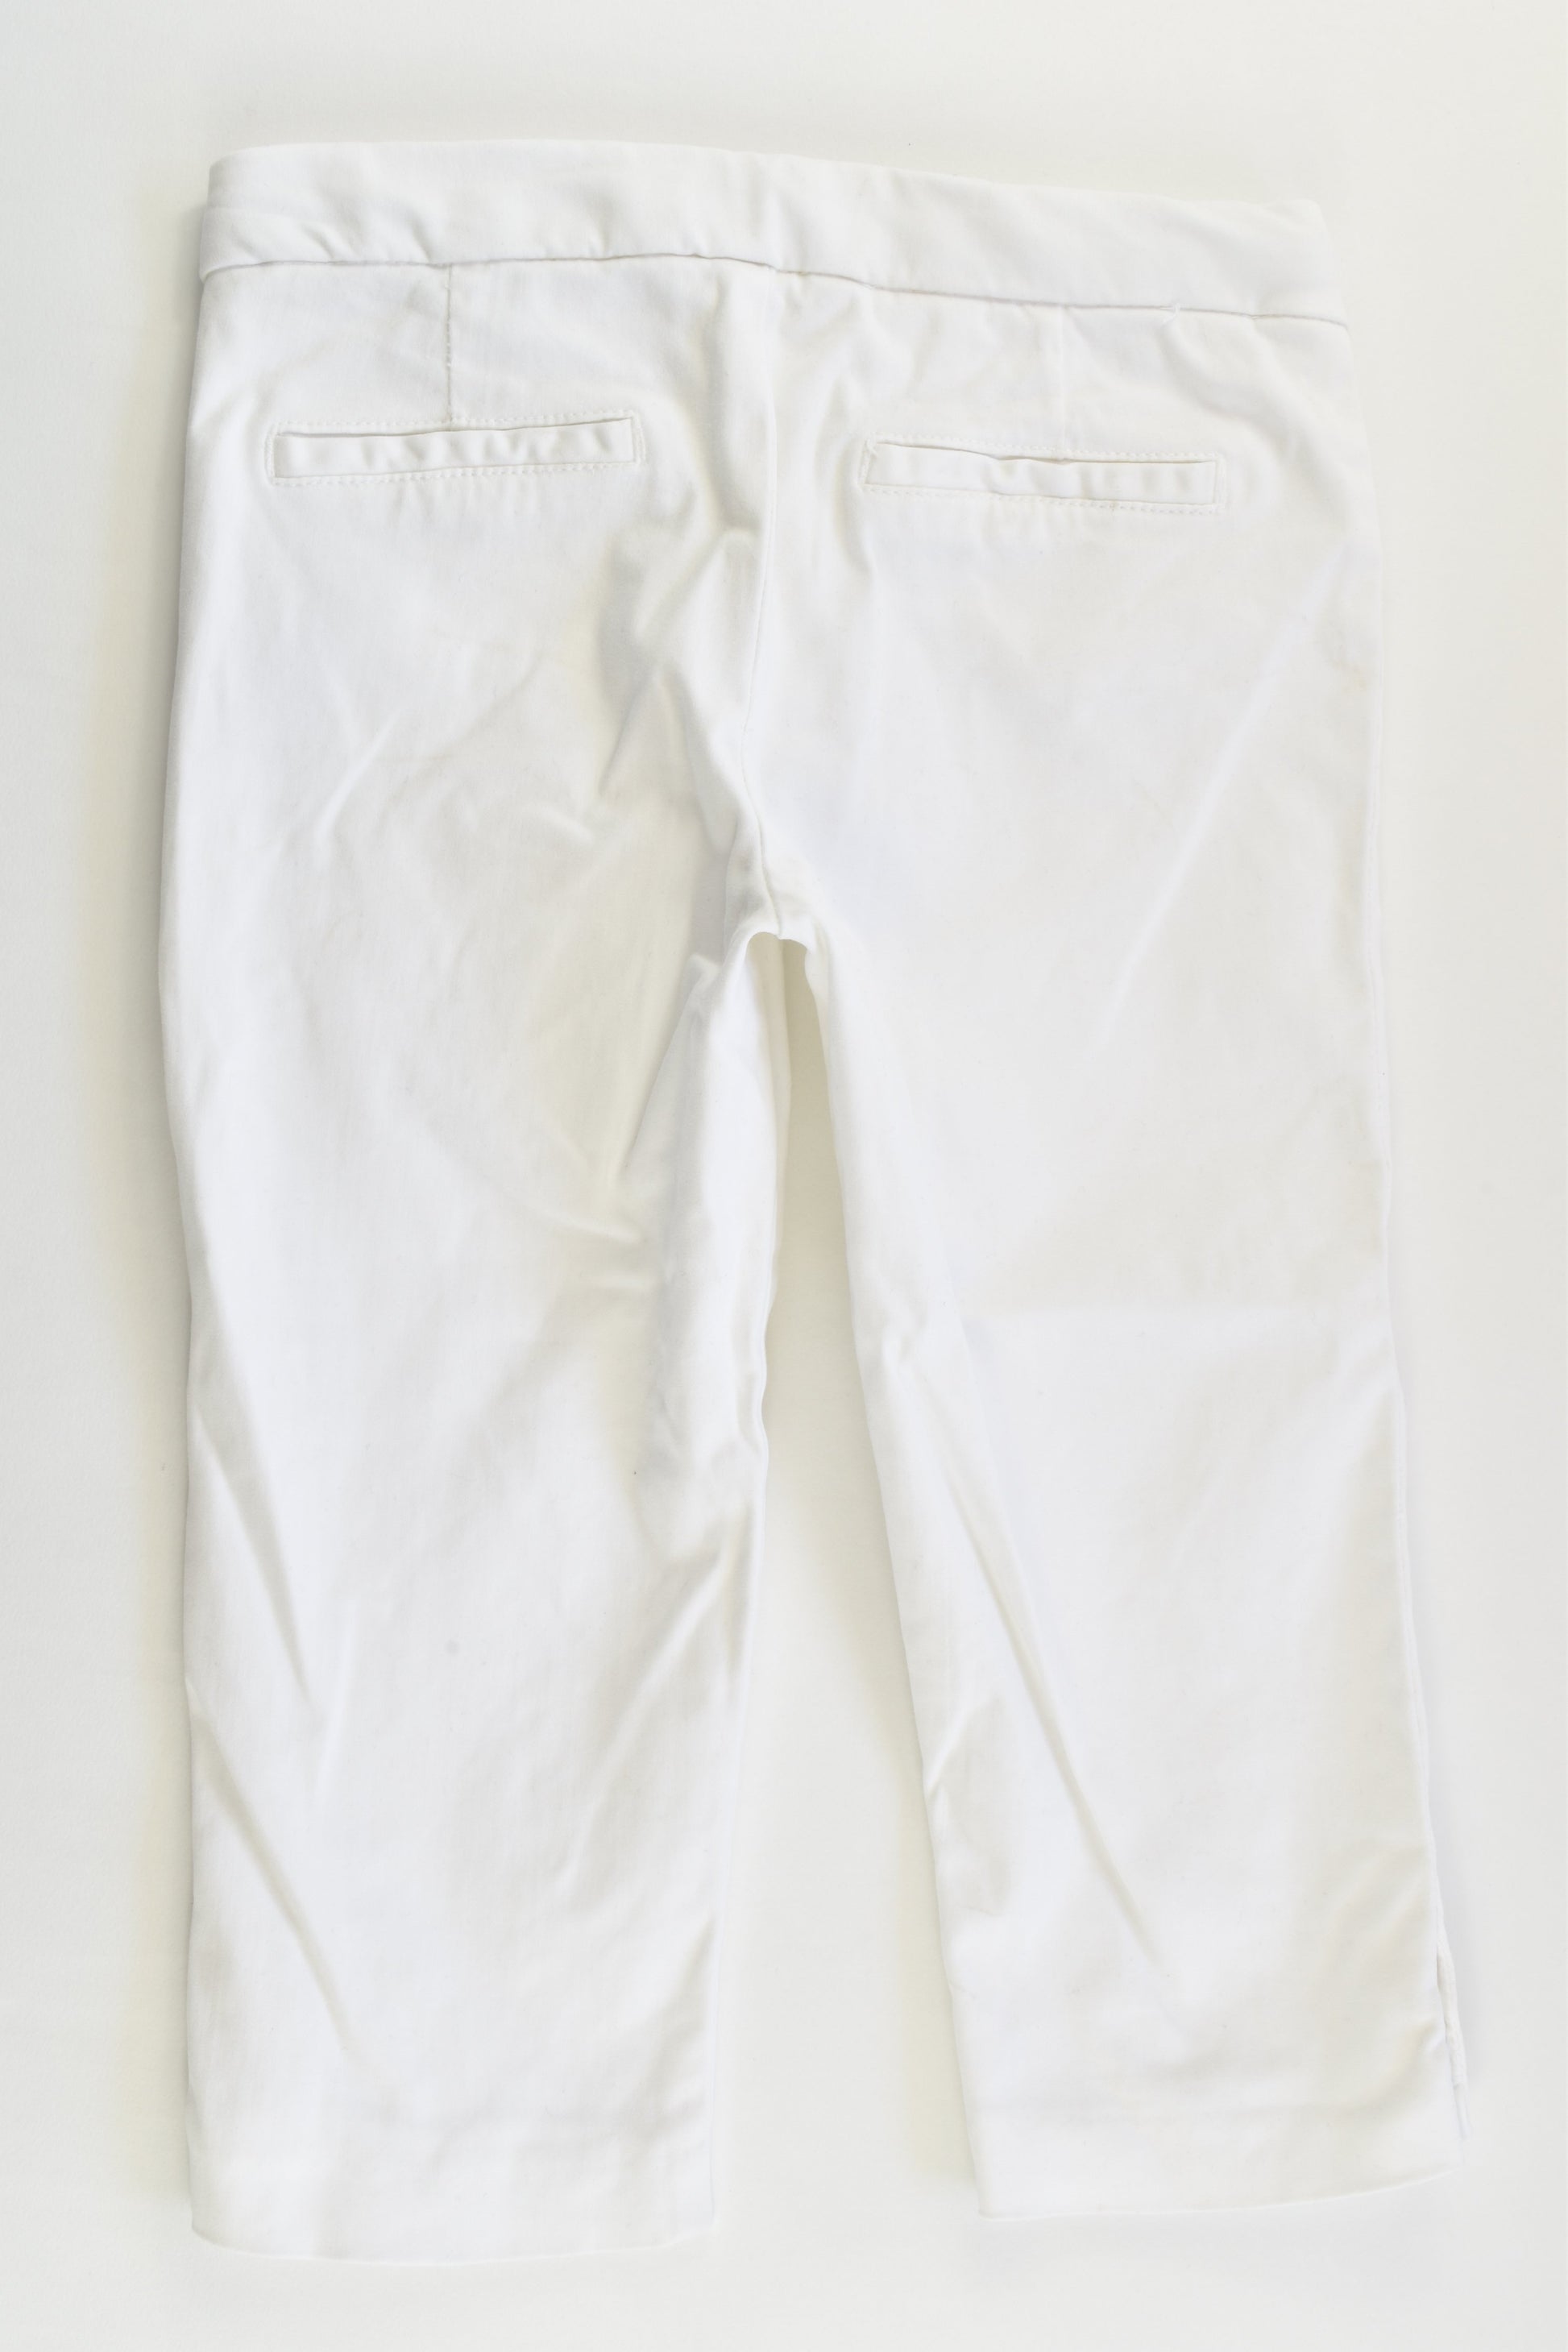 Zara Size 6 (116 cm) Capri Pants – MiniMe Preloved - Baby and Kids